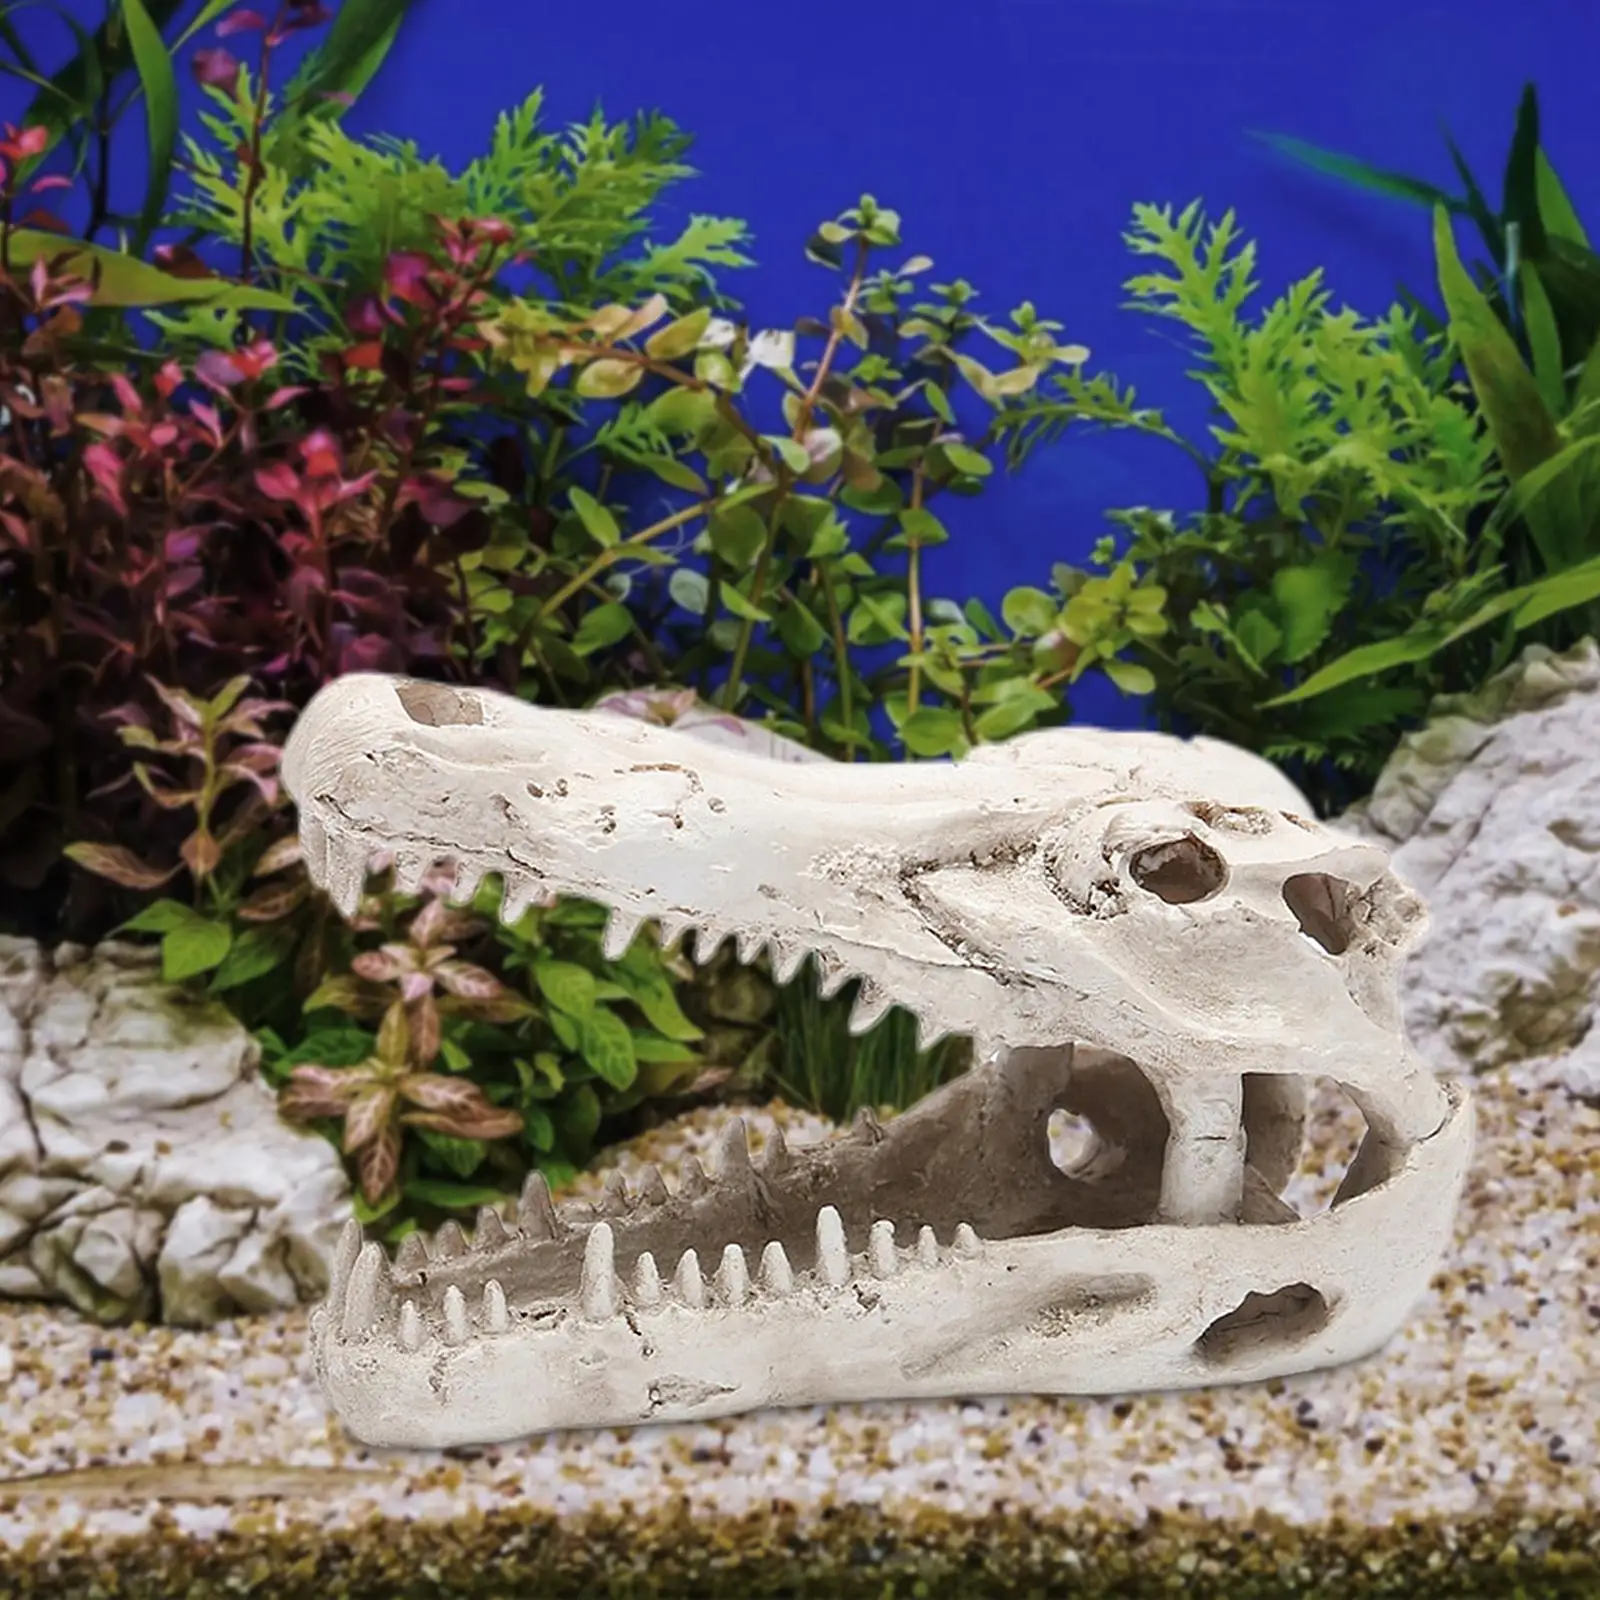 Aquarium Decoration  Accessories Reptiles for Fish Tank Garden